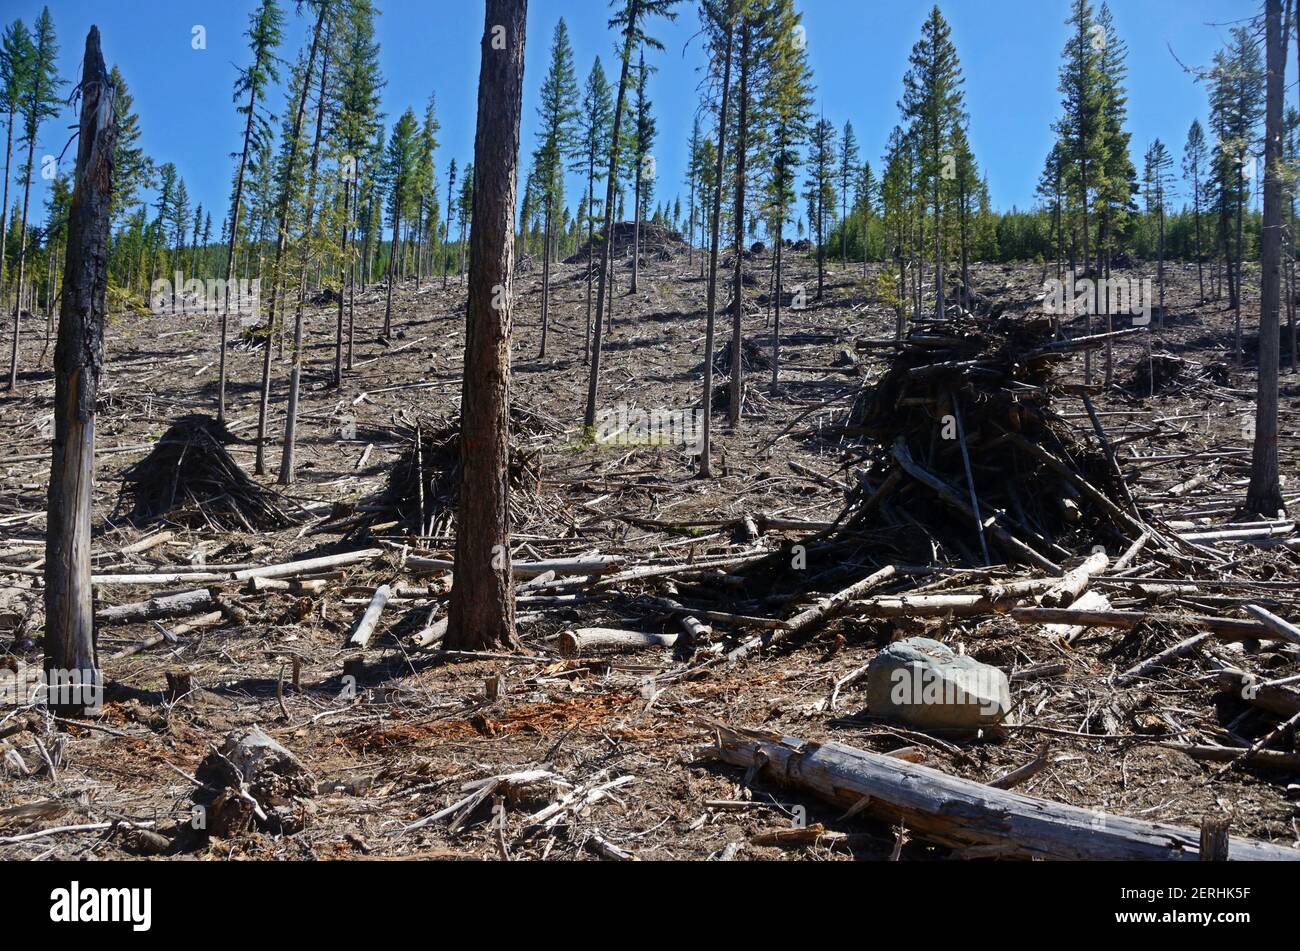 Rigenera il taglio e l'accatastamento per bruciare nella foresta nazionale di Kootenai. Yaak Valley, Montana nord-occidentale. (Foto di Randy Beacham) Foto Stock